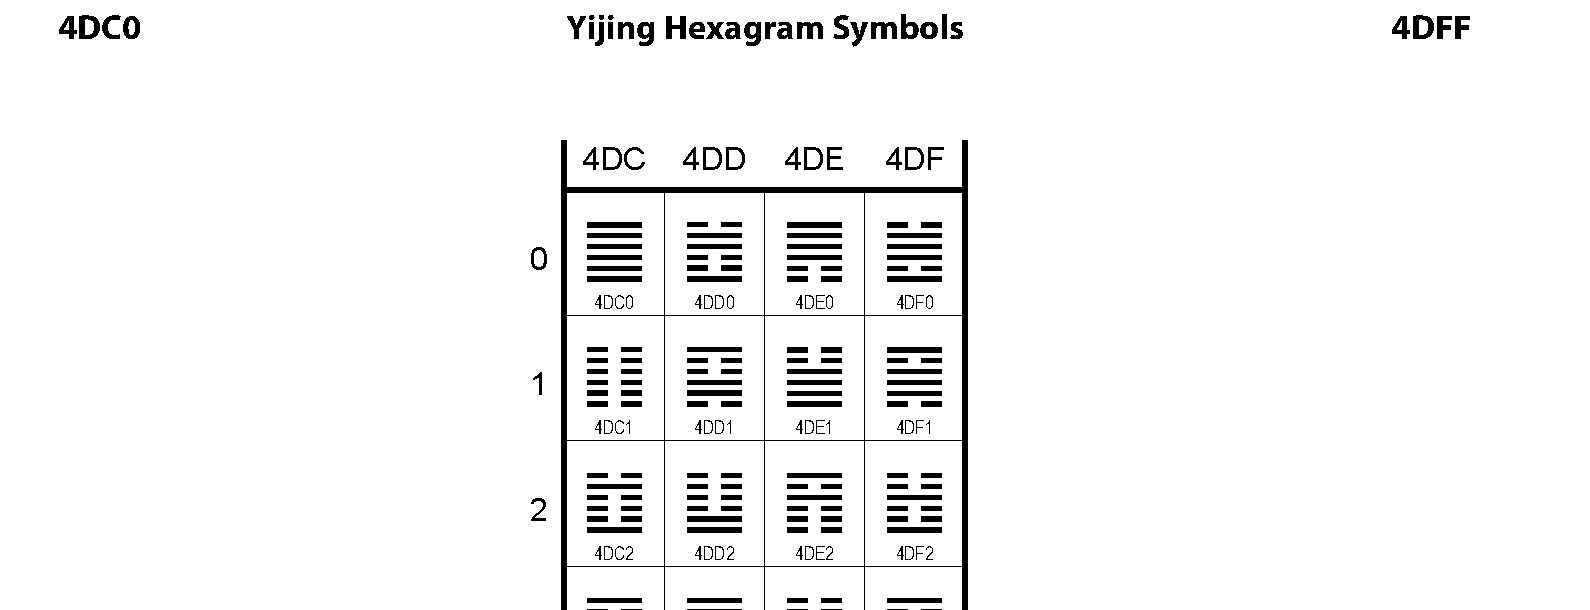 Unicode - Yijing Hexagram Symbols